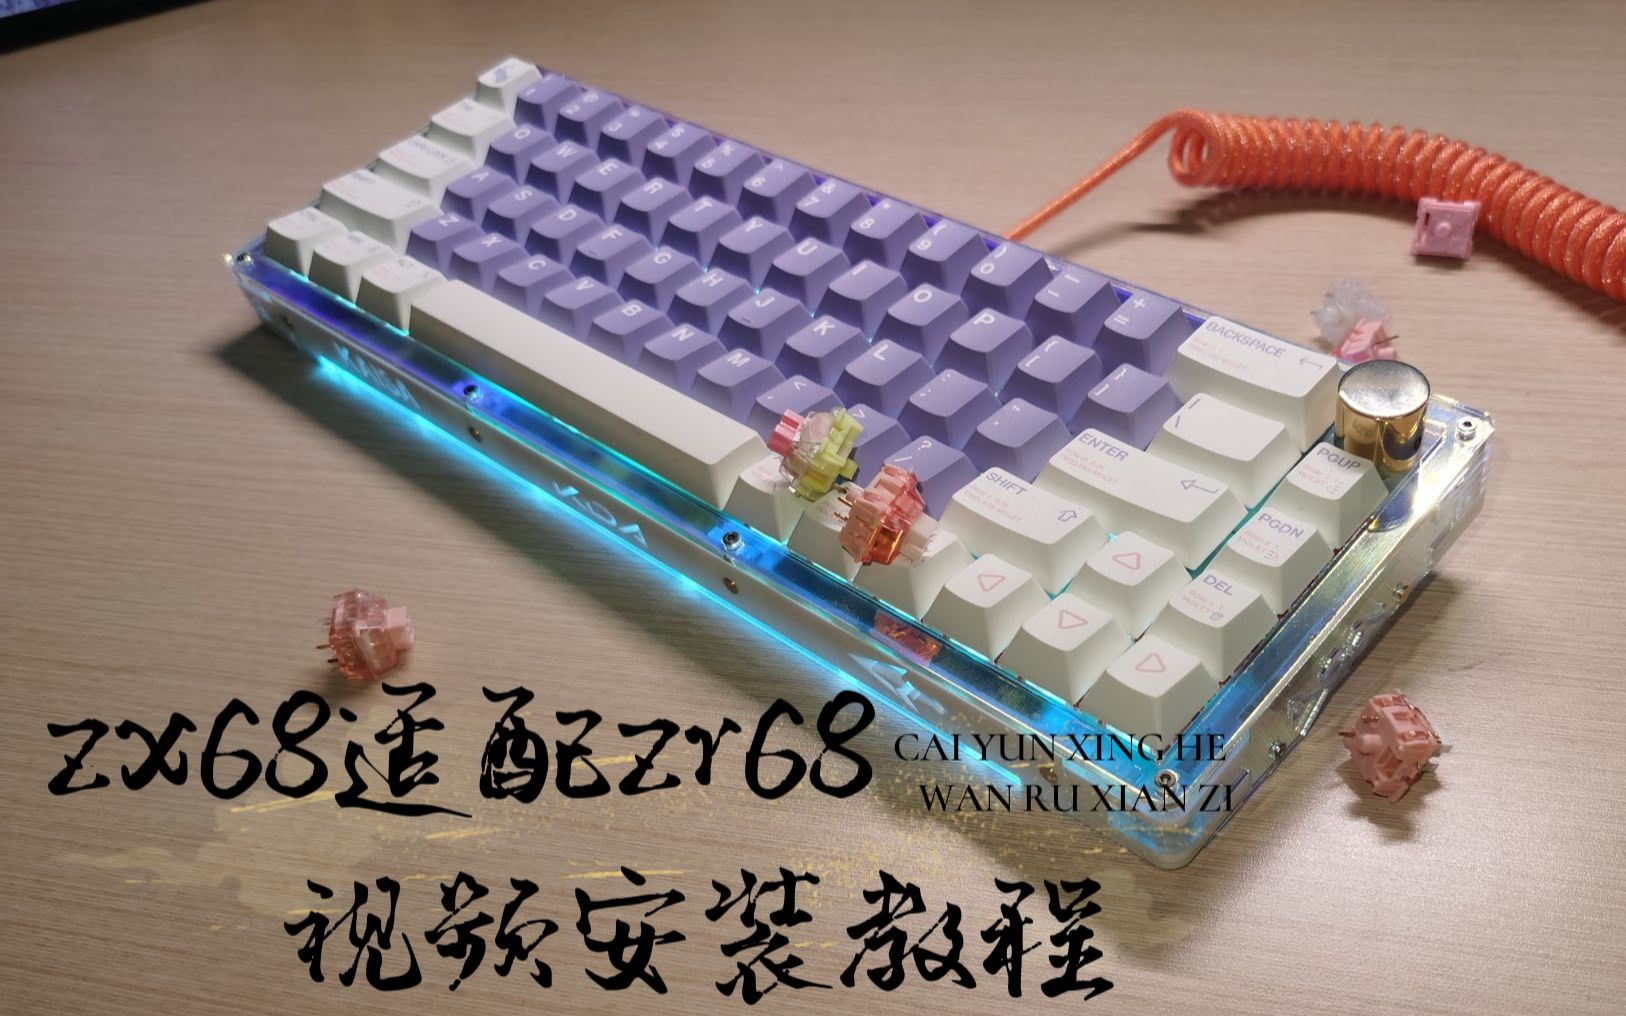 客制化键盘ZX68外壳zr类榫卯外壳组装教程（纯黑磨砂），老街-123456-哔 